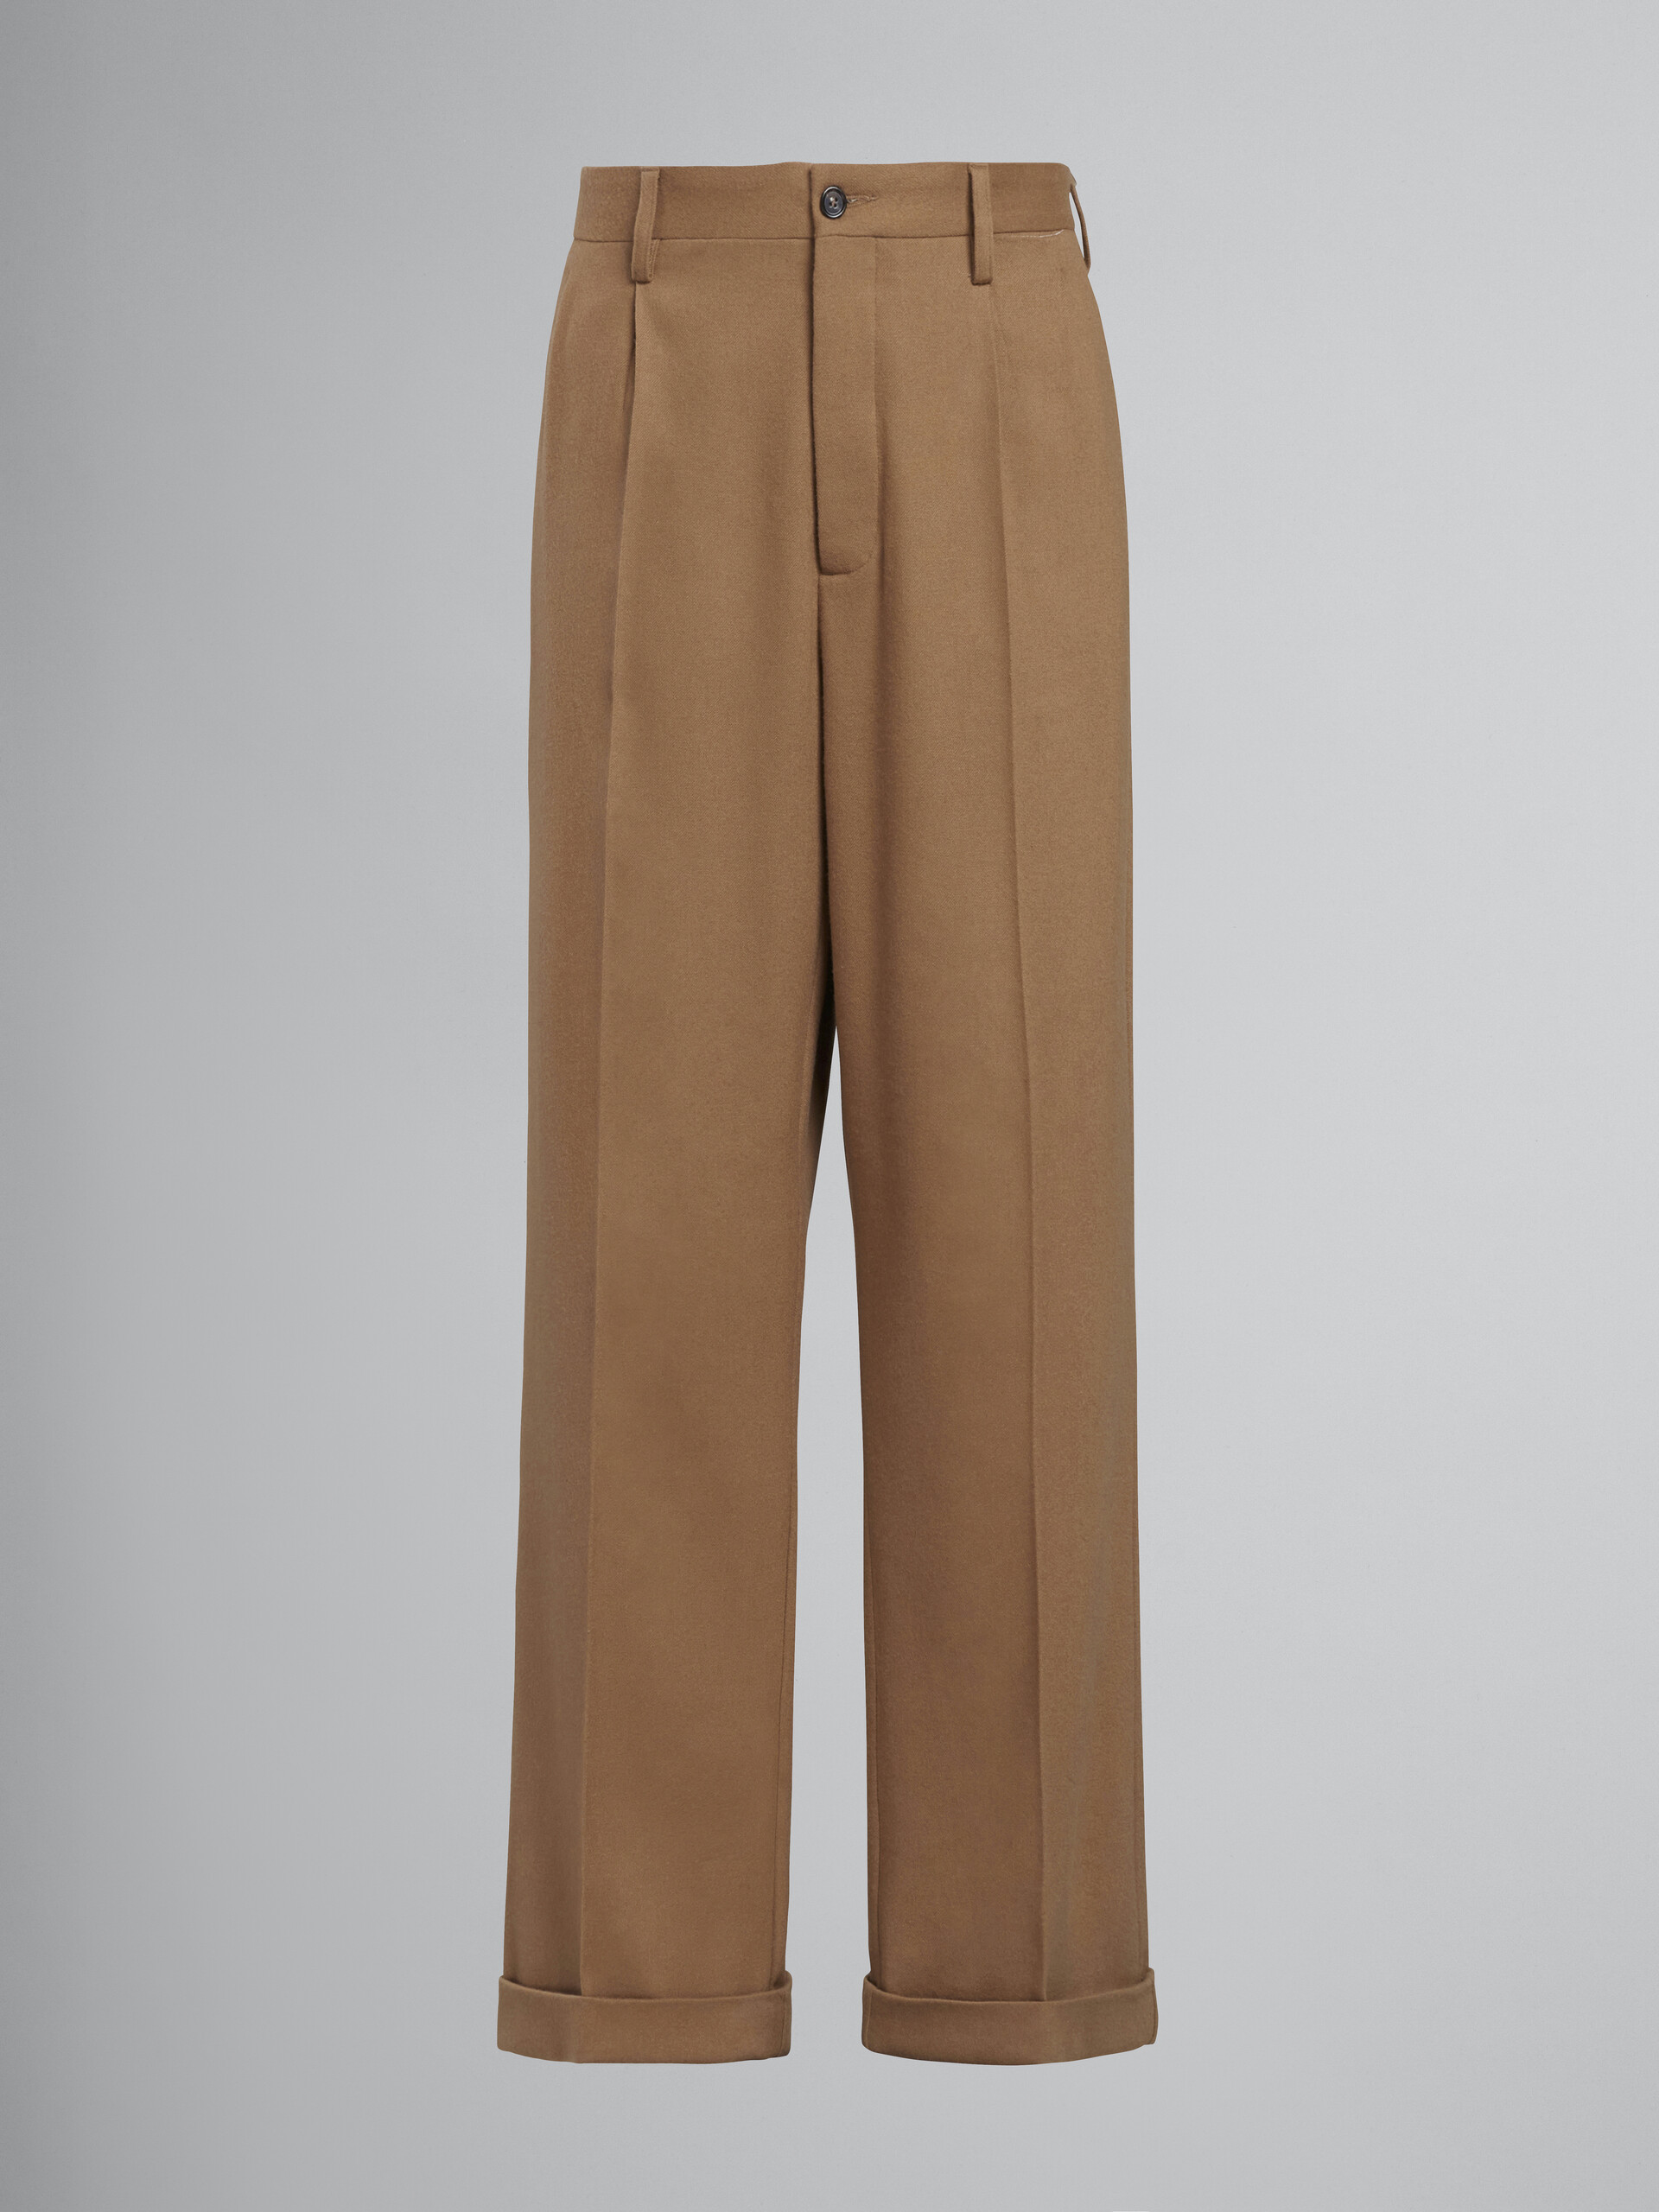 Pantalon style smoking en flanelle de laine beige - Pantalons - Image 1